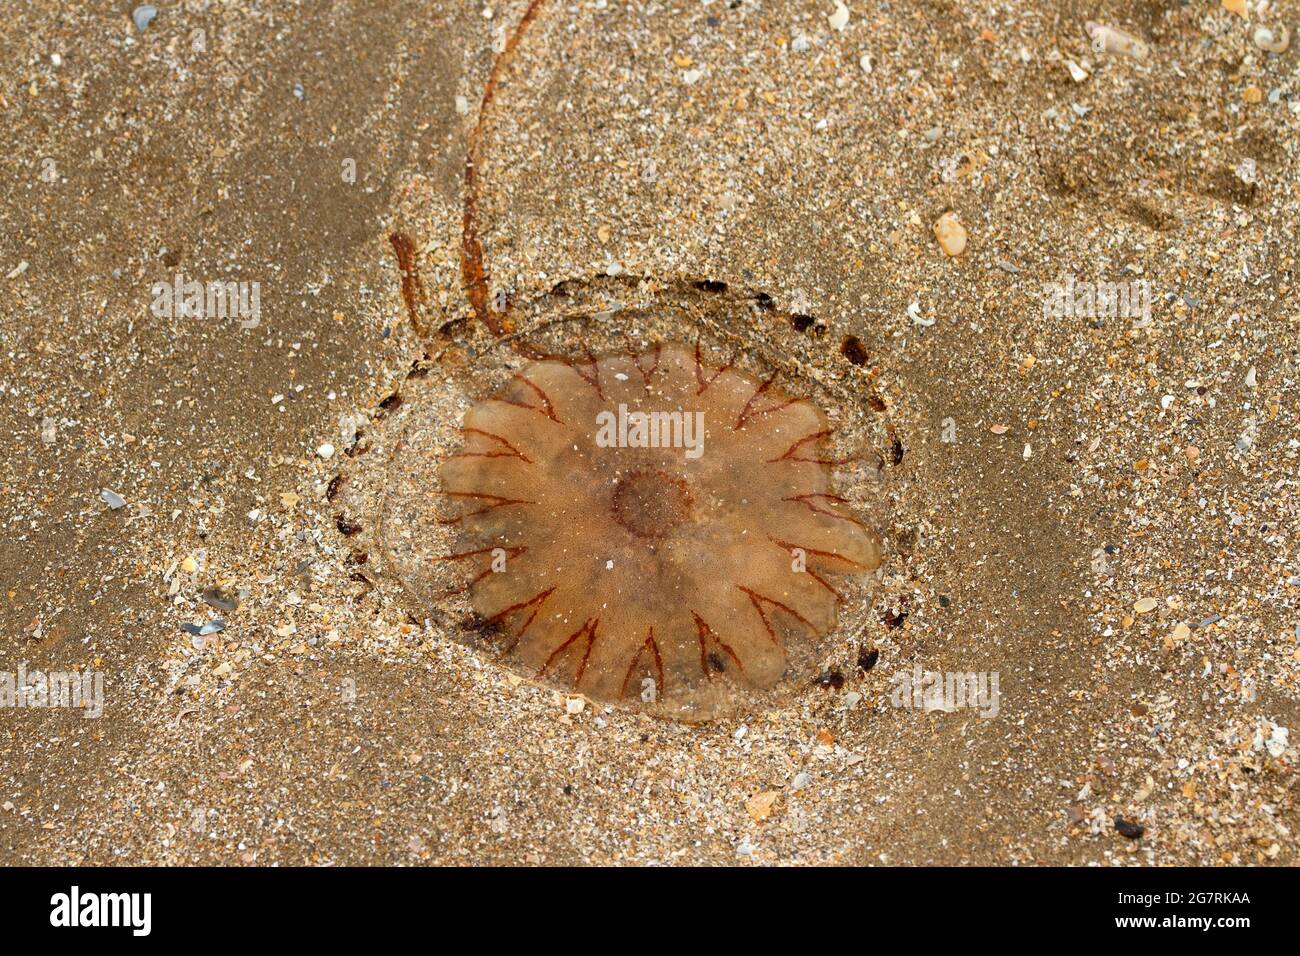 Le méduse Compass possède des marquages en V distinctifs et est un visiteur courant des eaux côtières en été. Leurs 24 tentacules piquant Banque D'Images